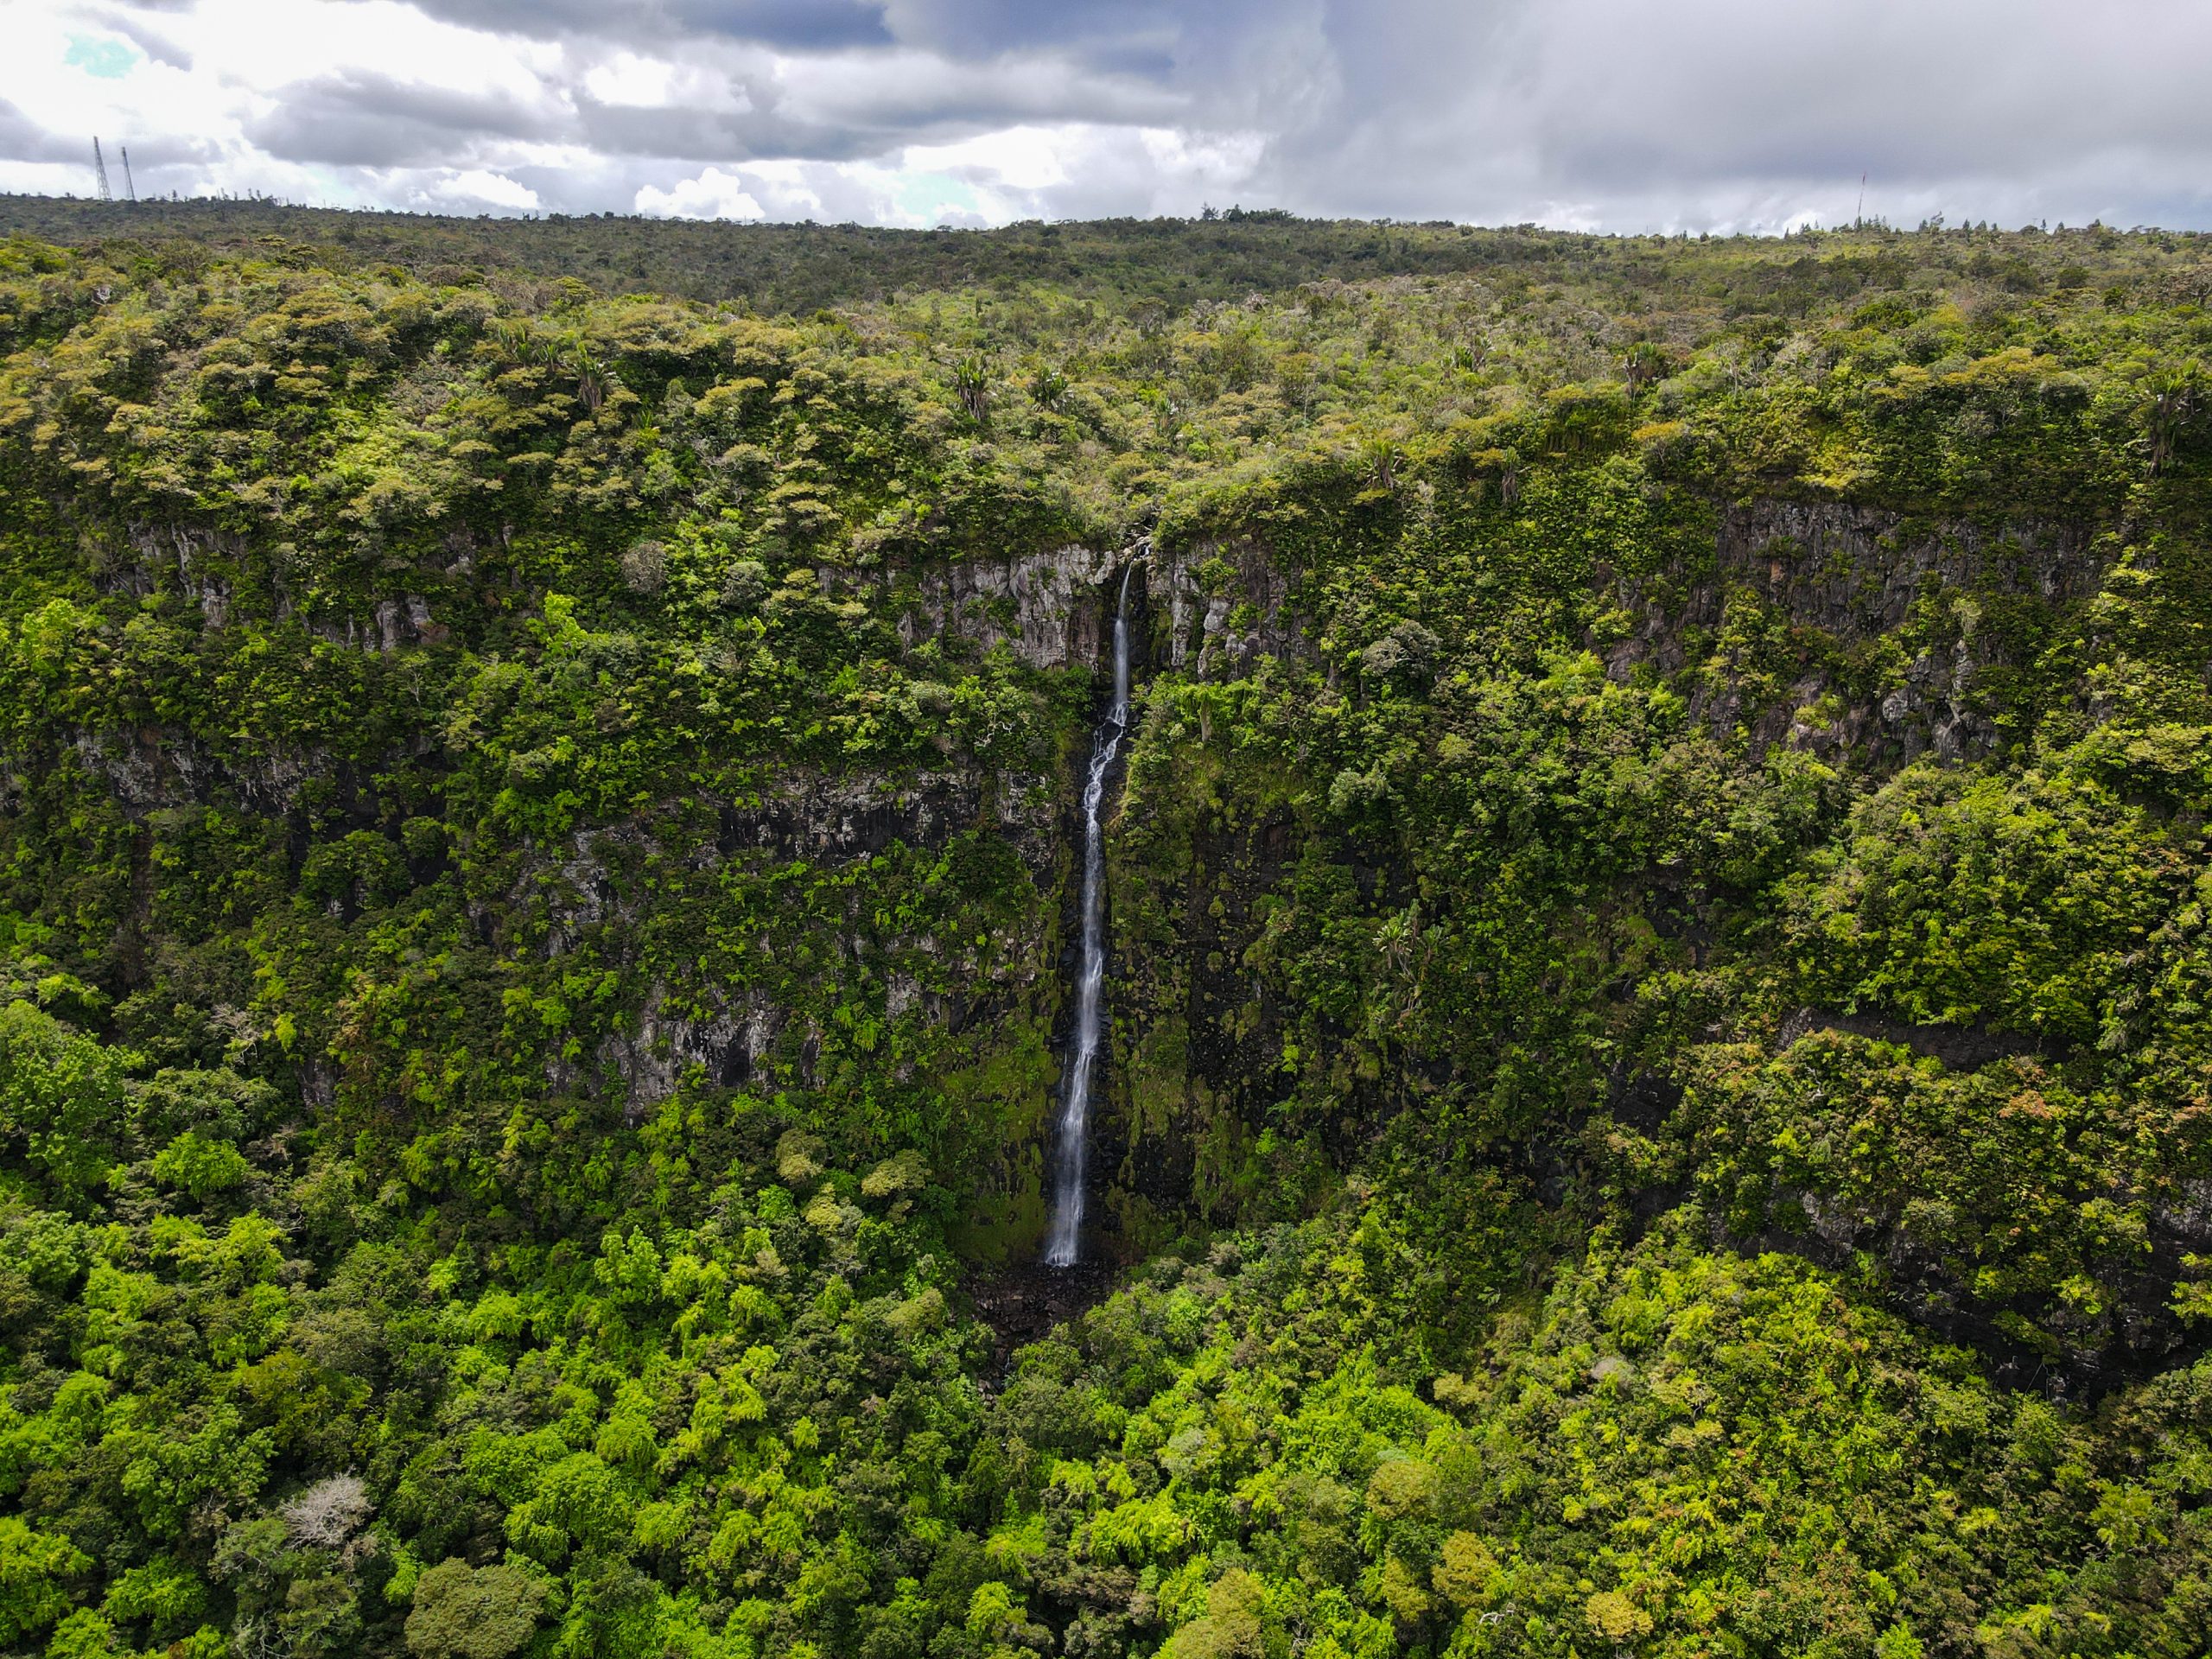 Mauritius heeft meer te bieden dan mooie stranden: wat denk je van bossen vol groene heuvels en indrukwekkende watervallen?